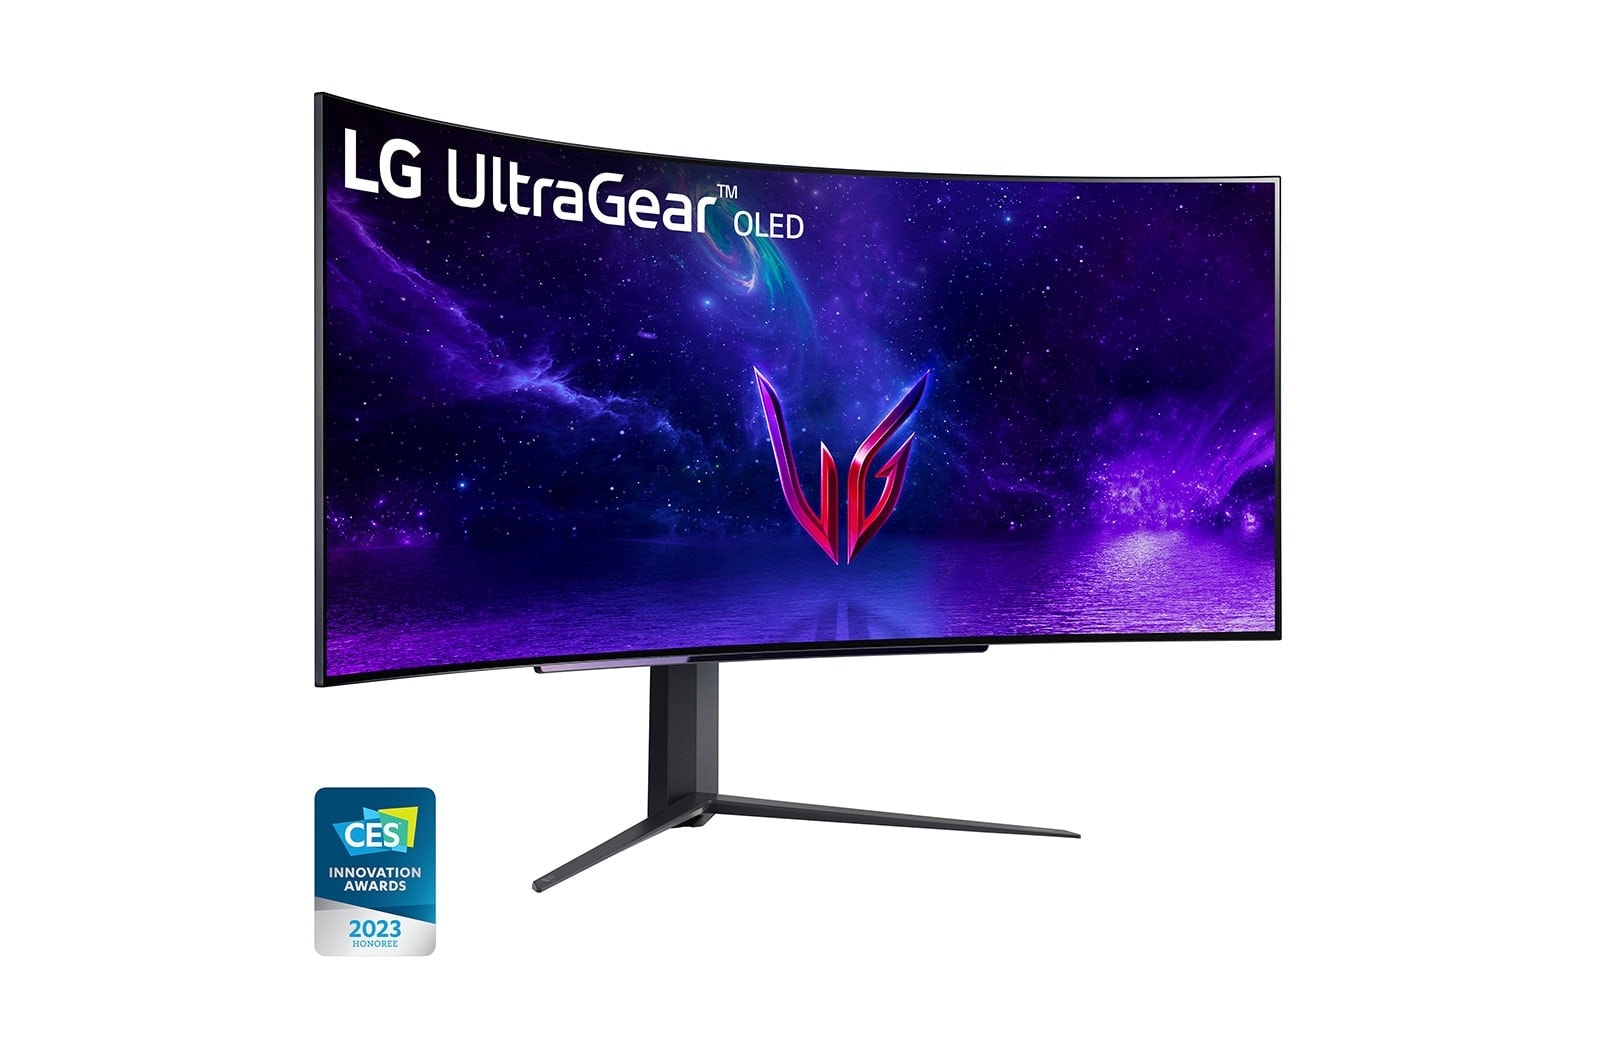 LG شاشة ألعاب منحنية UltraGear™ OLED مقاس 45 بوصة بدقة WQHD مع معدل تحديث يبلغ 240 هرتز ووقت استجابة يبلغ 0.03 مللي ثانية, 45GR95QE-B